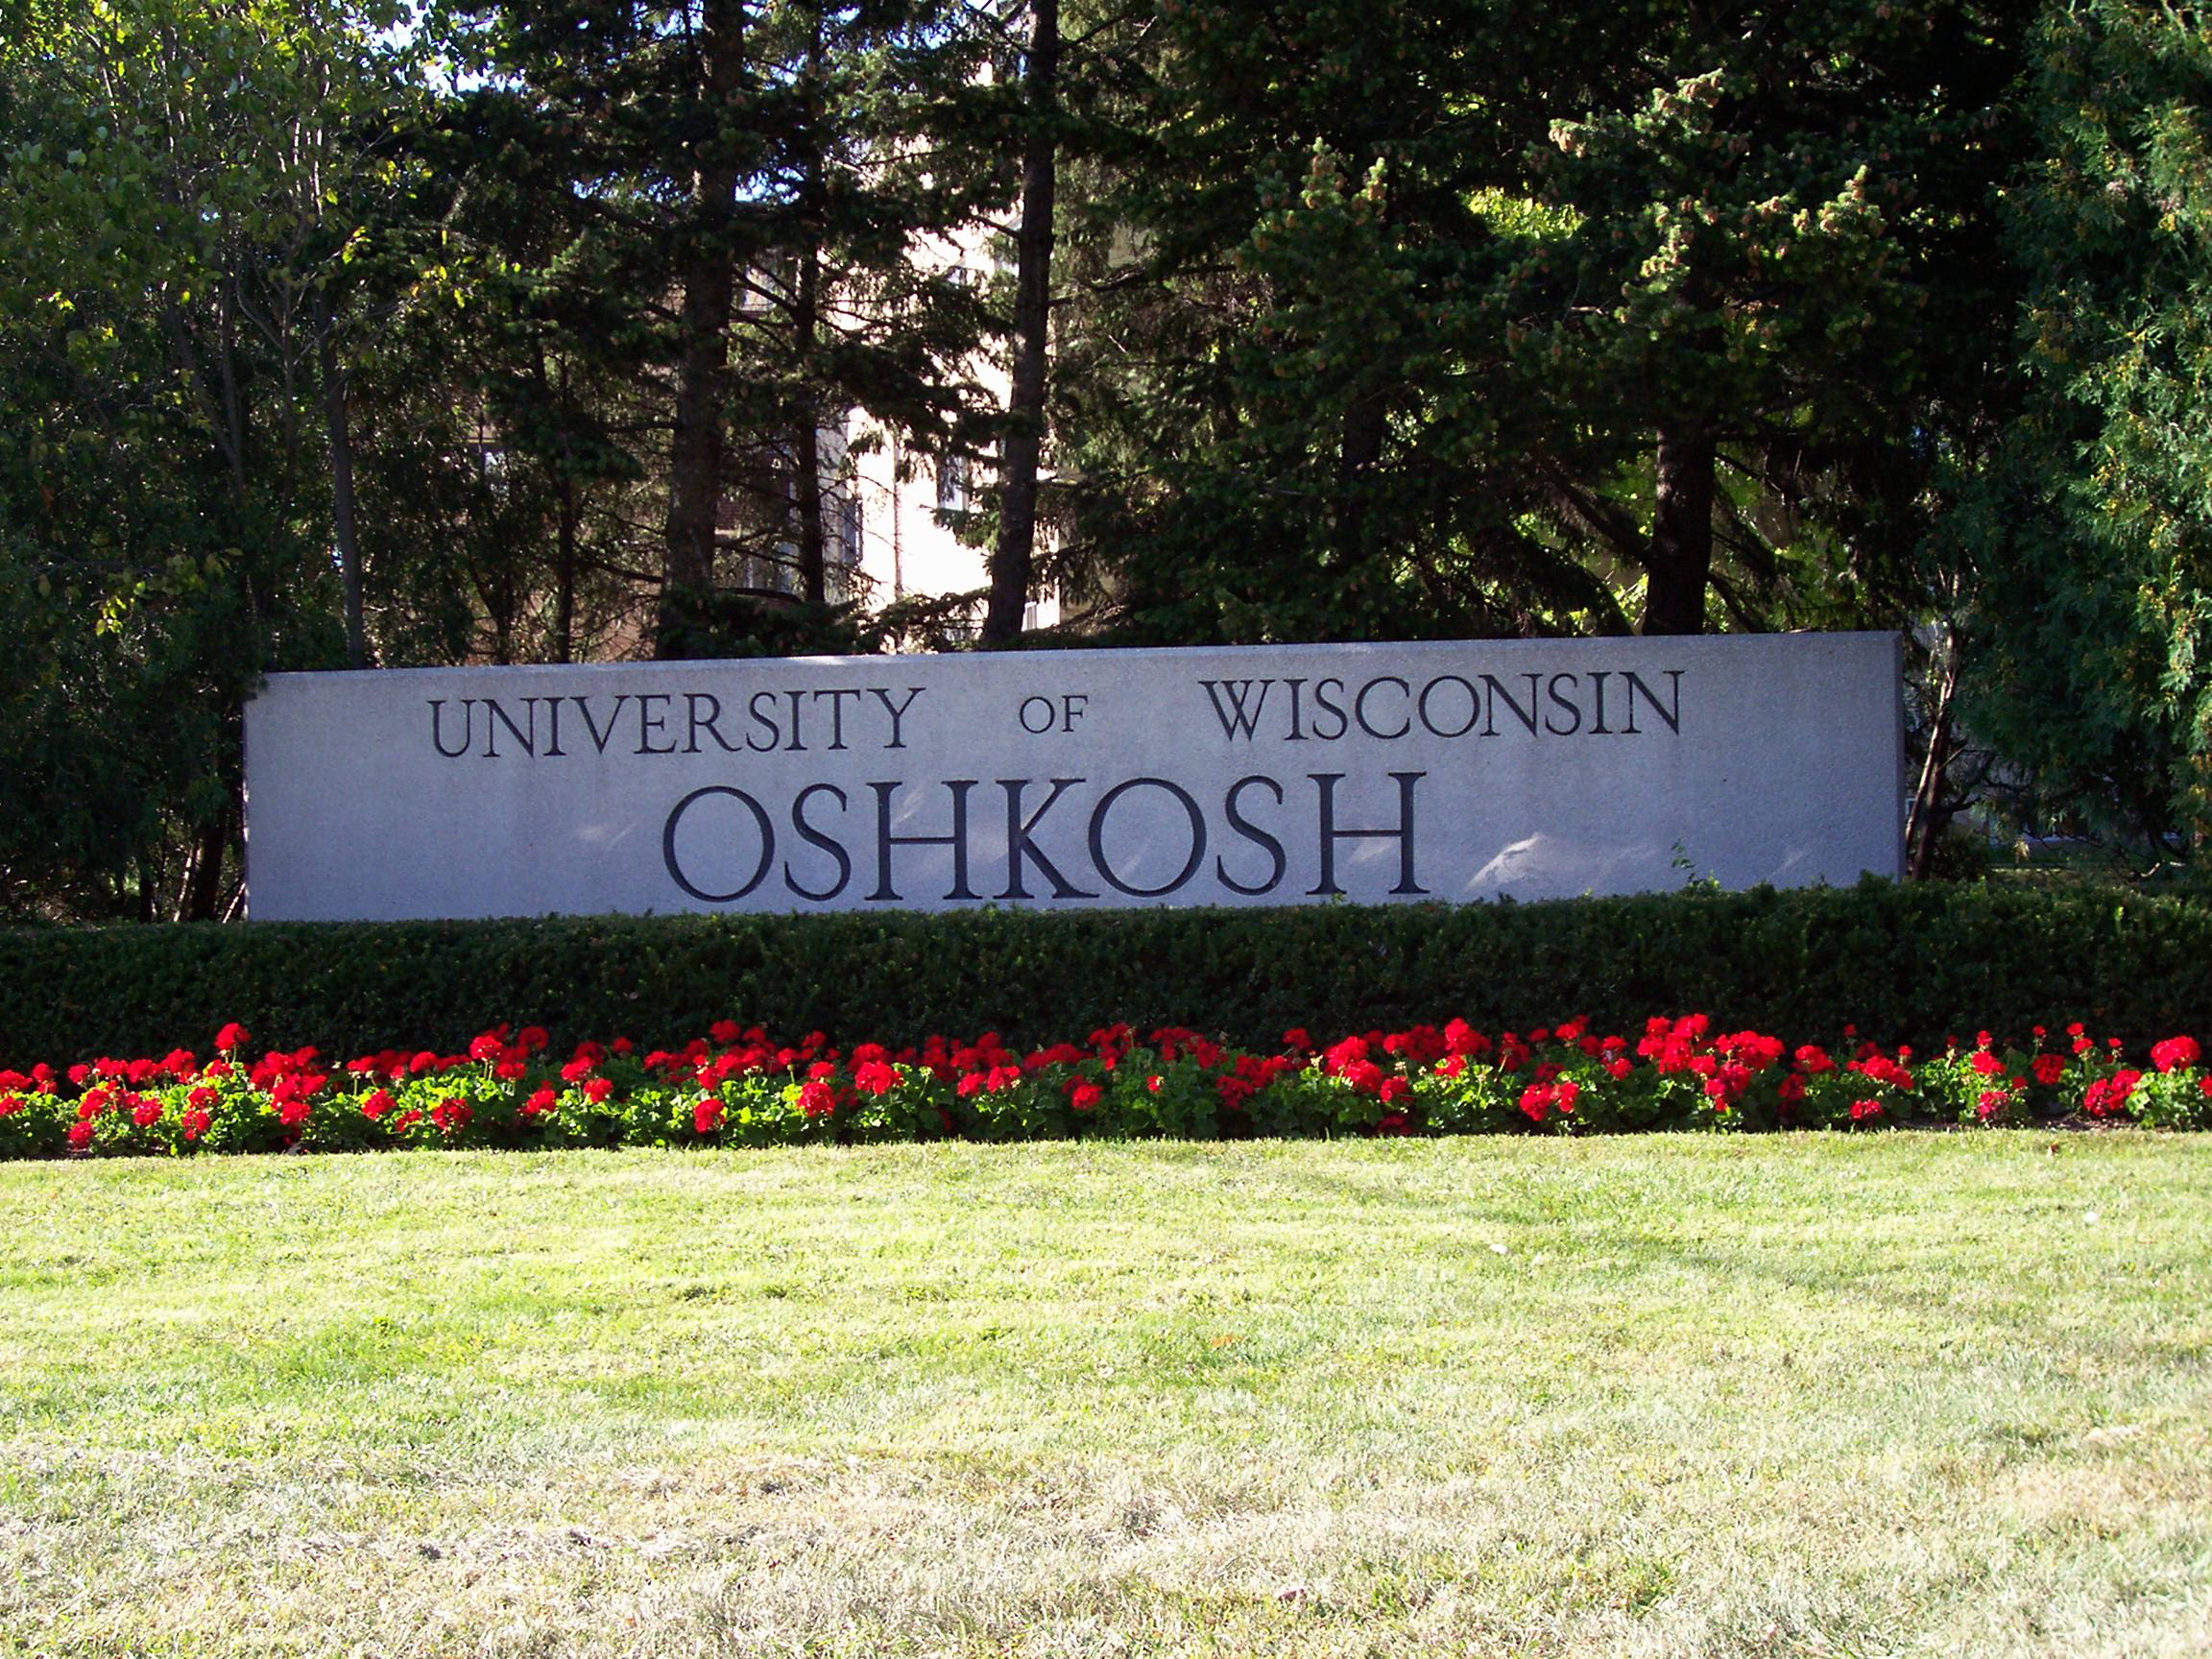 UW-Oshkosh Investigates, Calls Forum Over Racist Images